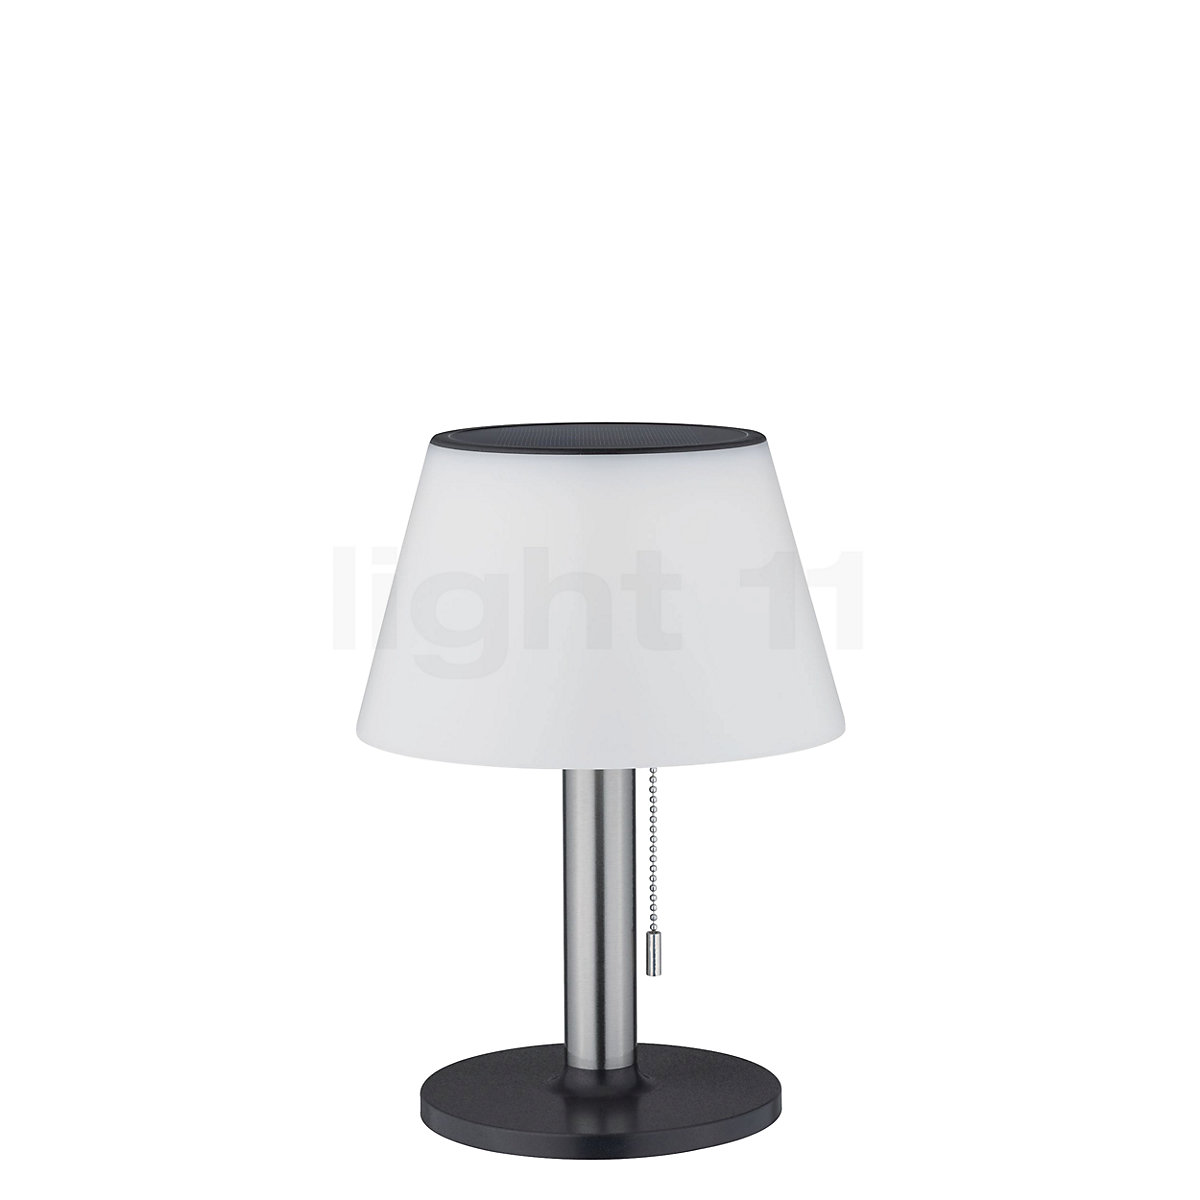 Raap bladeren op werkgelegenheid Gevoel Buy Paulmann Lillesol Table Lamp LED with Solar at